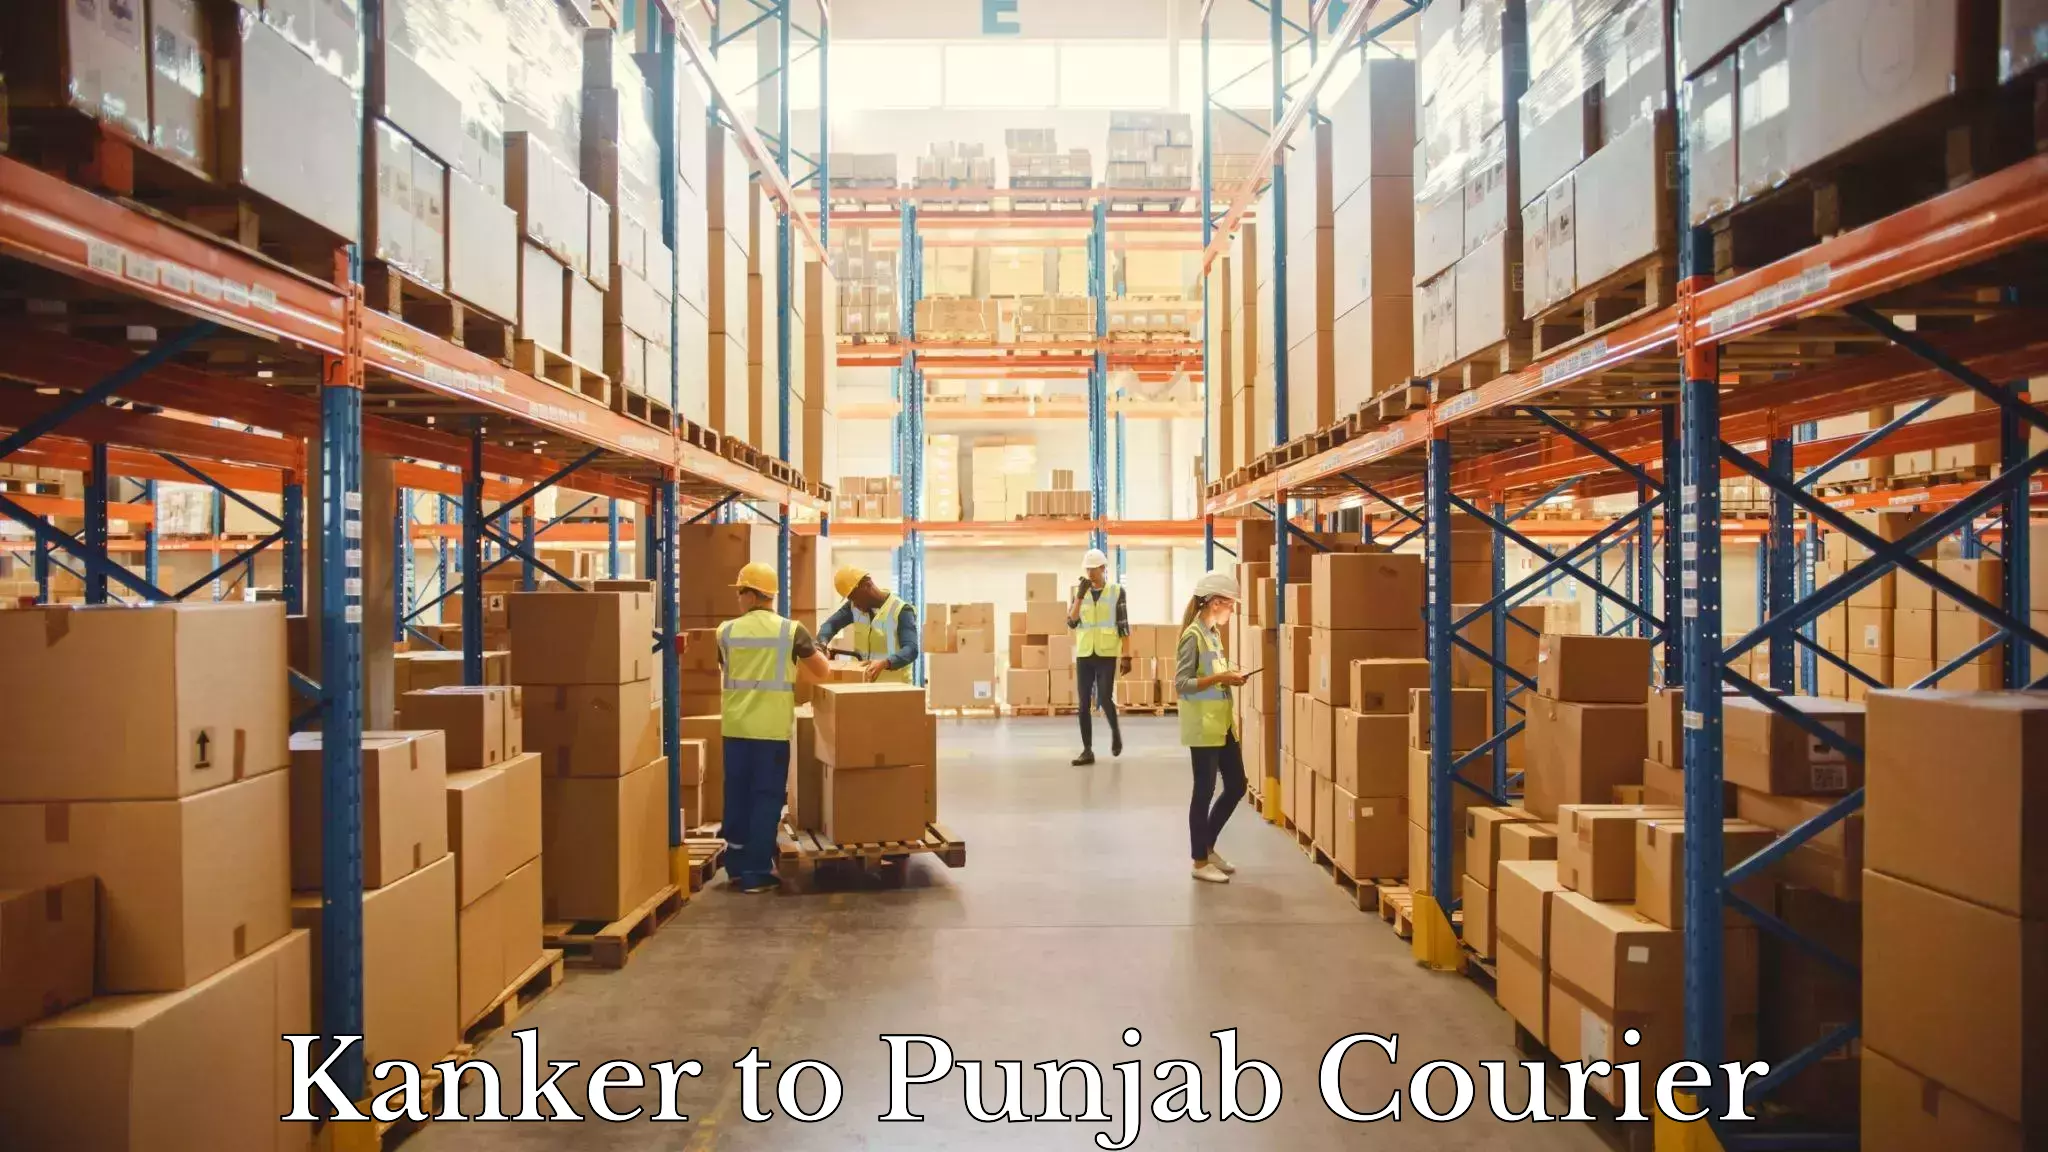 International shipping rates in Kanker to Punjab